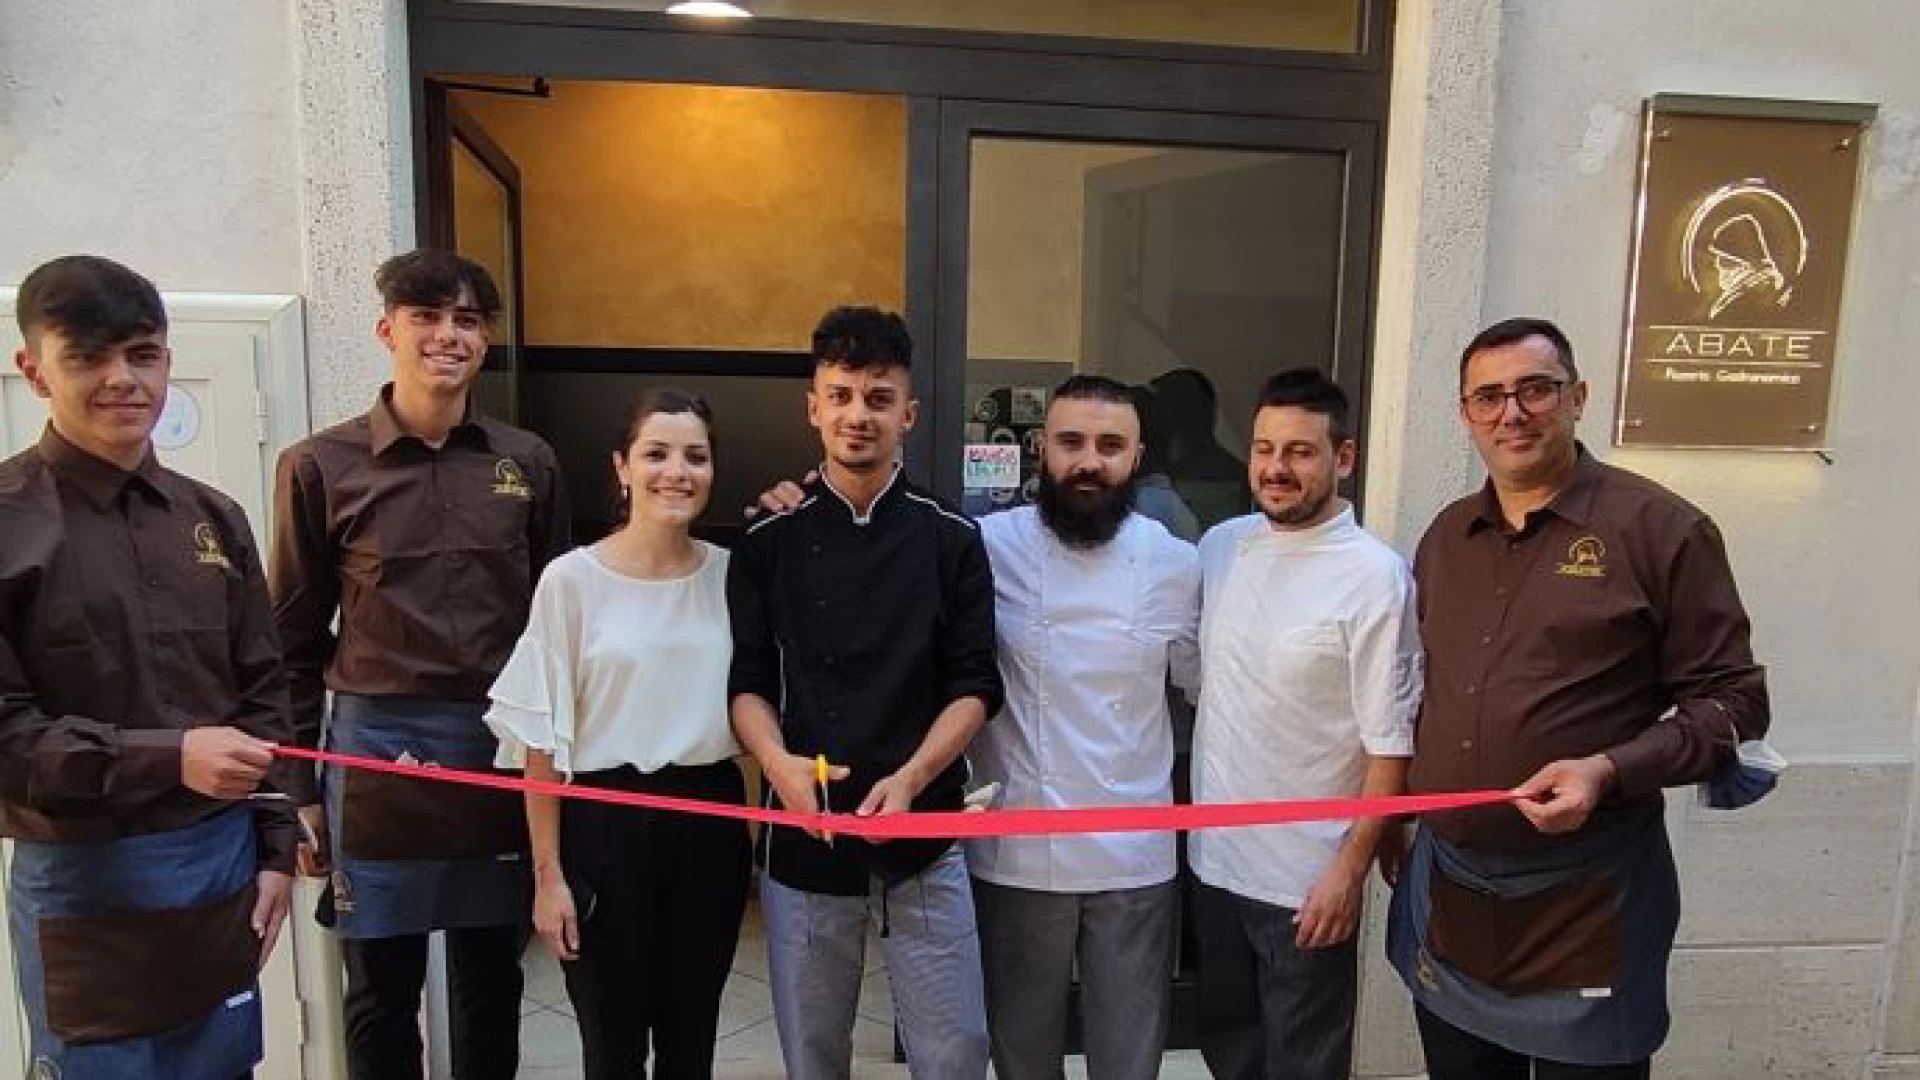 Castel Di Sangro: il sogno di Mirco si realizza. Inaugurata la pizzeria gastronomica “Abate”. Guarda il servizio a cura della redazione.